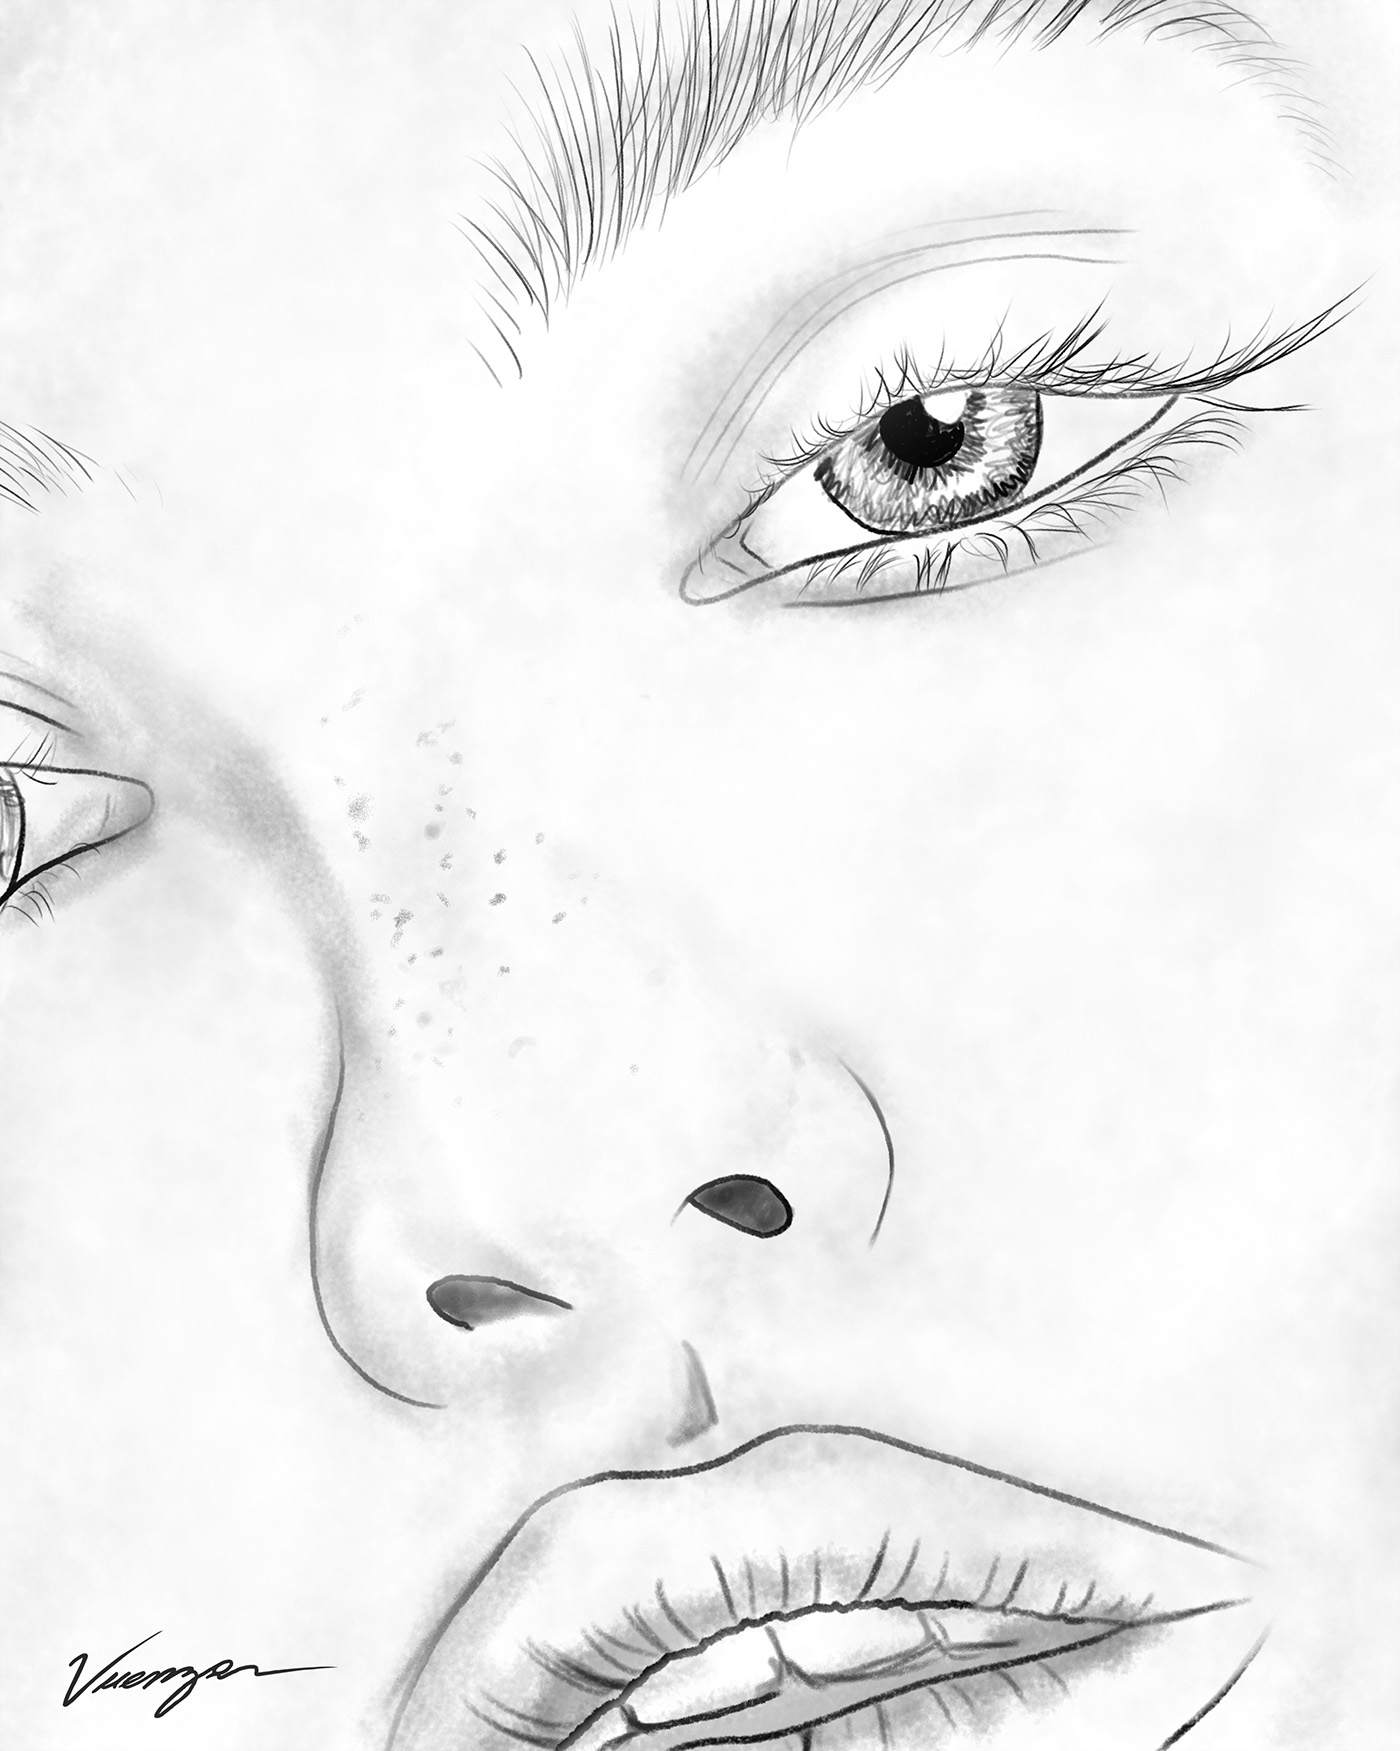 vuenza camilogiraldo sexy girl Draft craft pencil ilustration face eyes